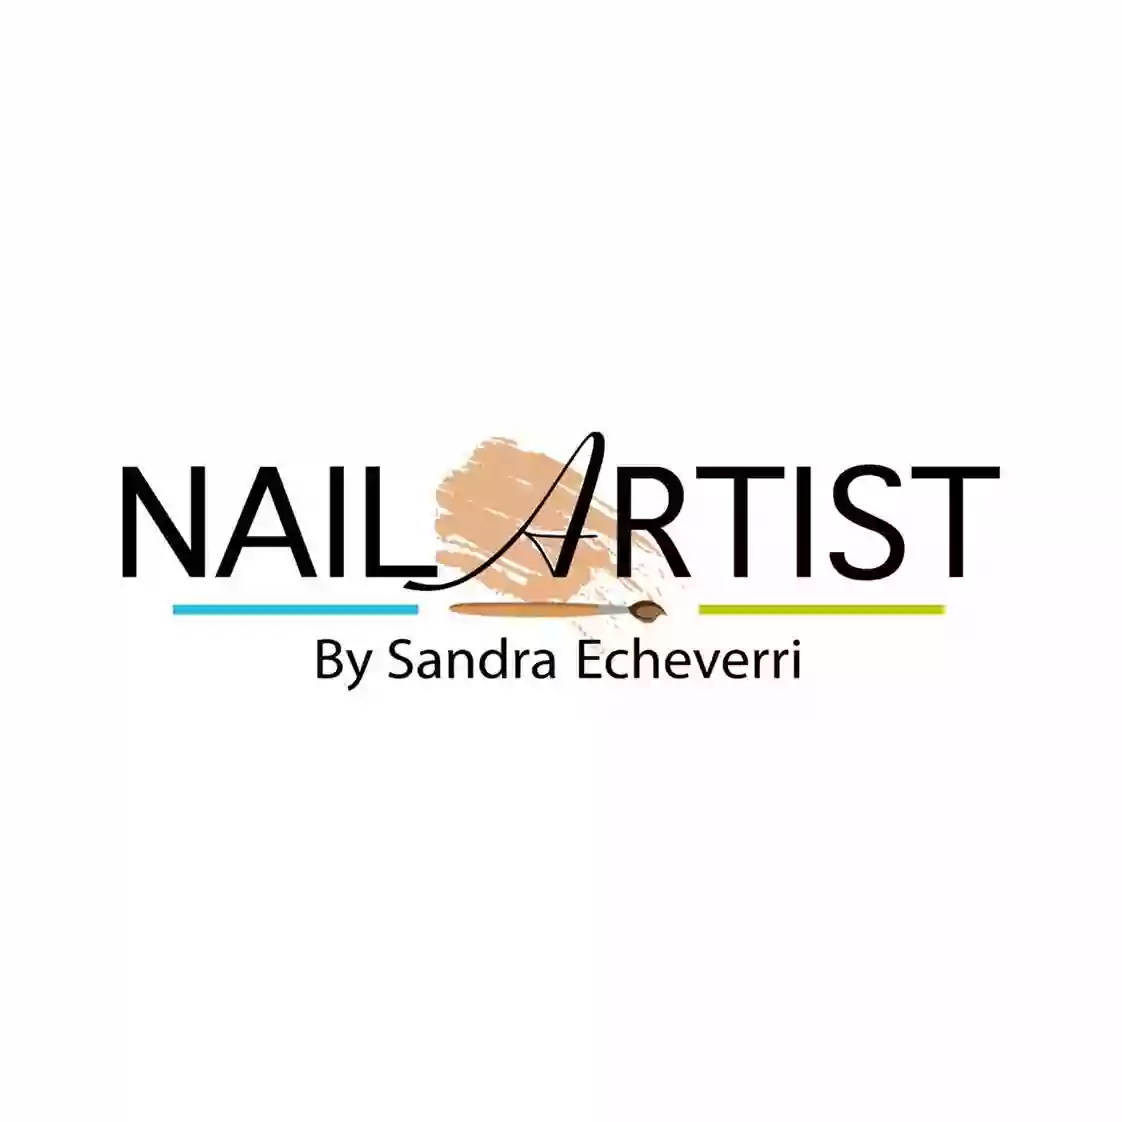 Nail artist By Sandra Echeverri